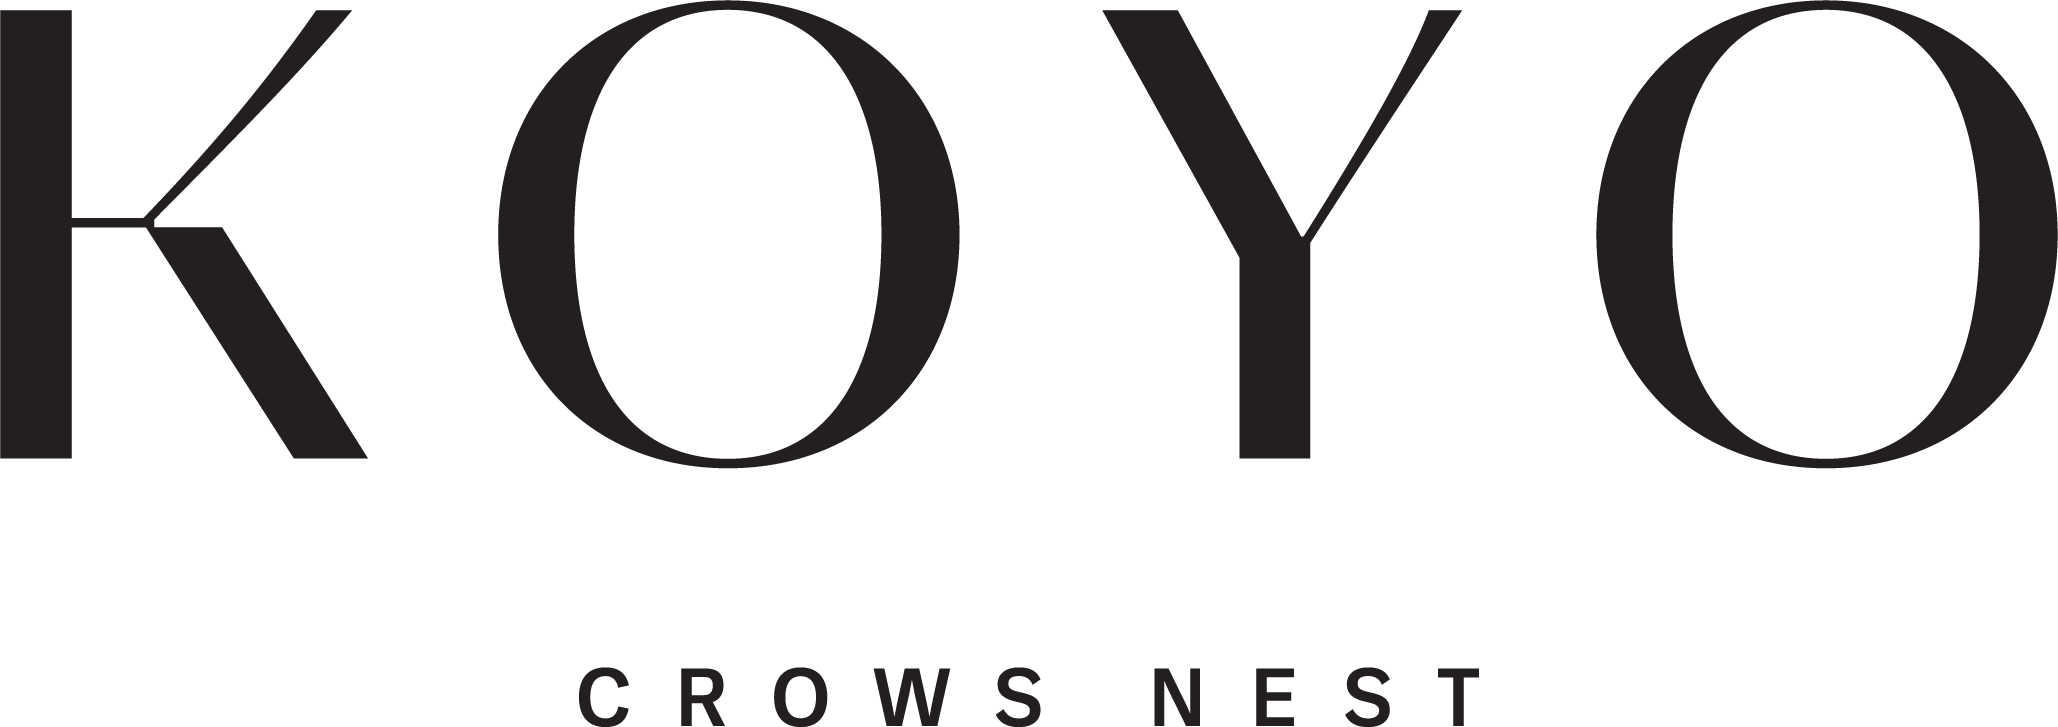 Koyo Crows Nest